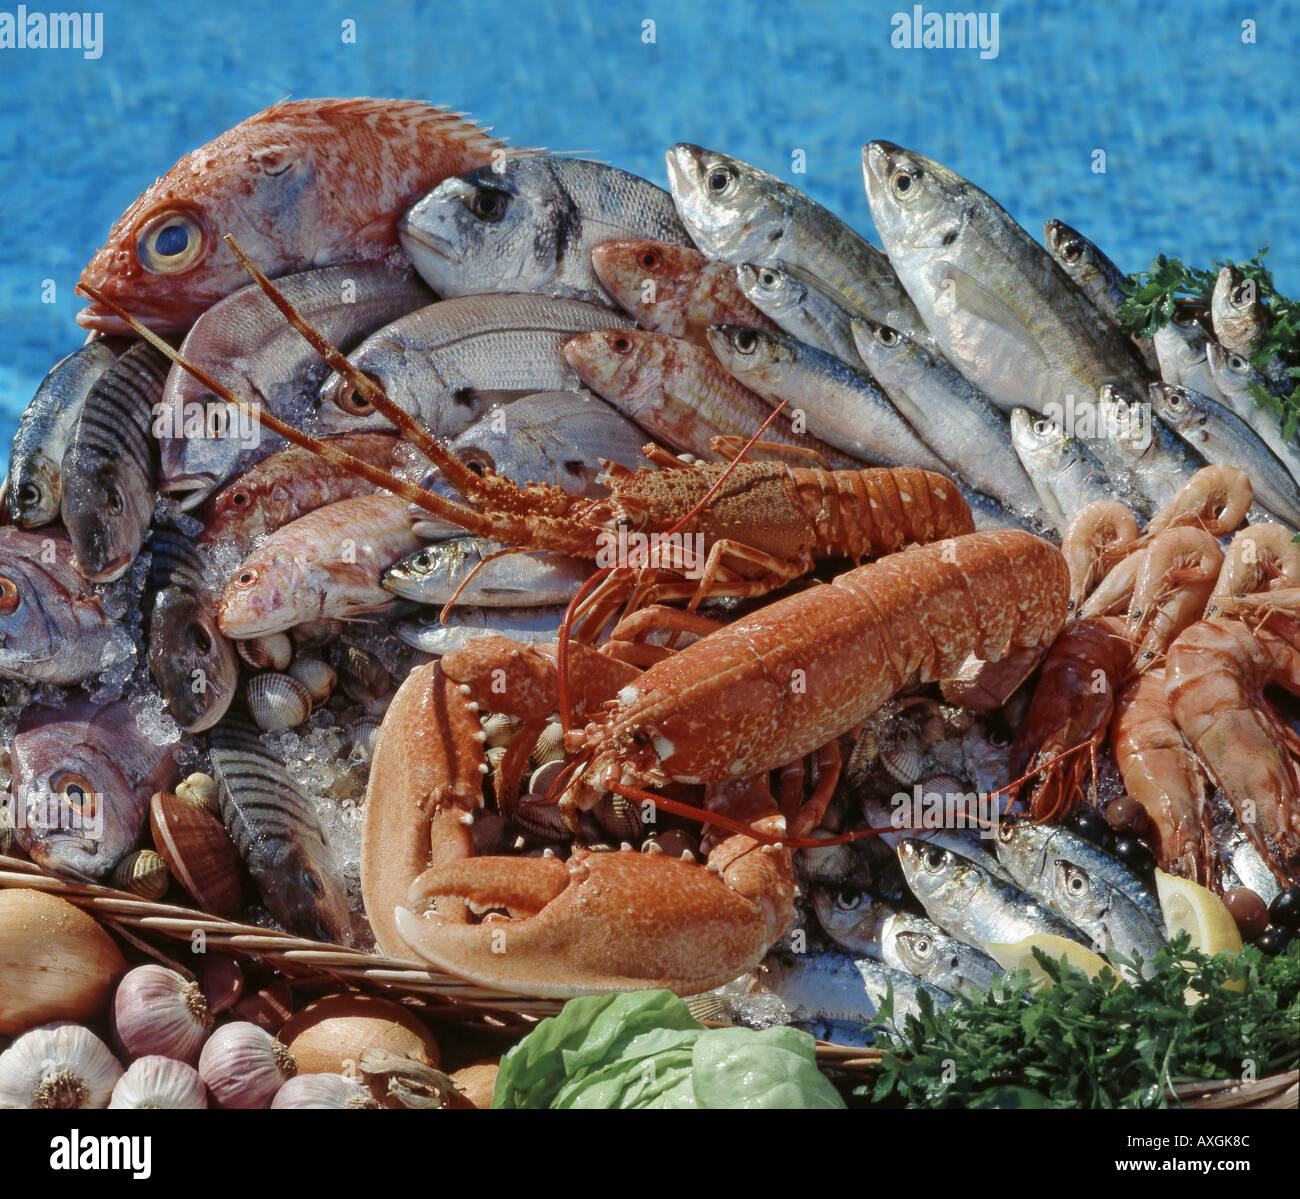 Vielfalt an frischem Fisch und Hummer am Swimmingpool Stockfoto